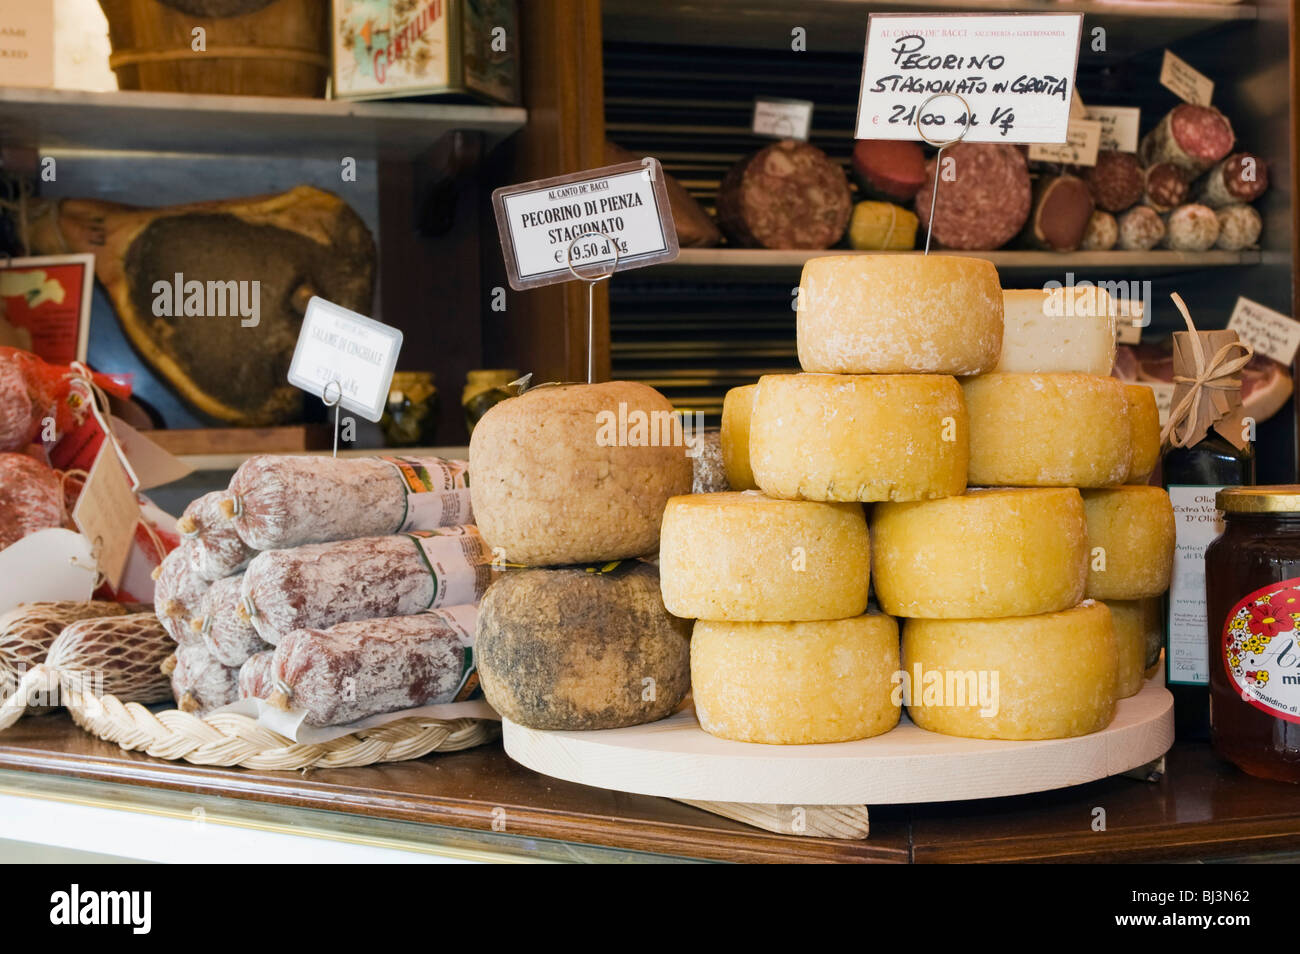 Pecorino cheese in the deli, Canto e De'Bacci Salumeria Gastronomia, Arezzo, Tuscany, Italy, Europe Stock Photo